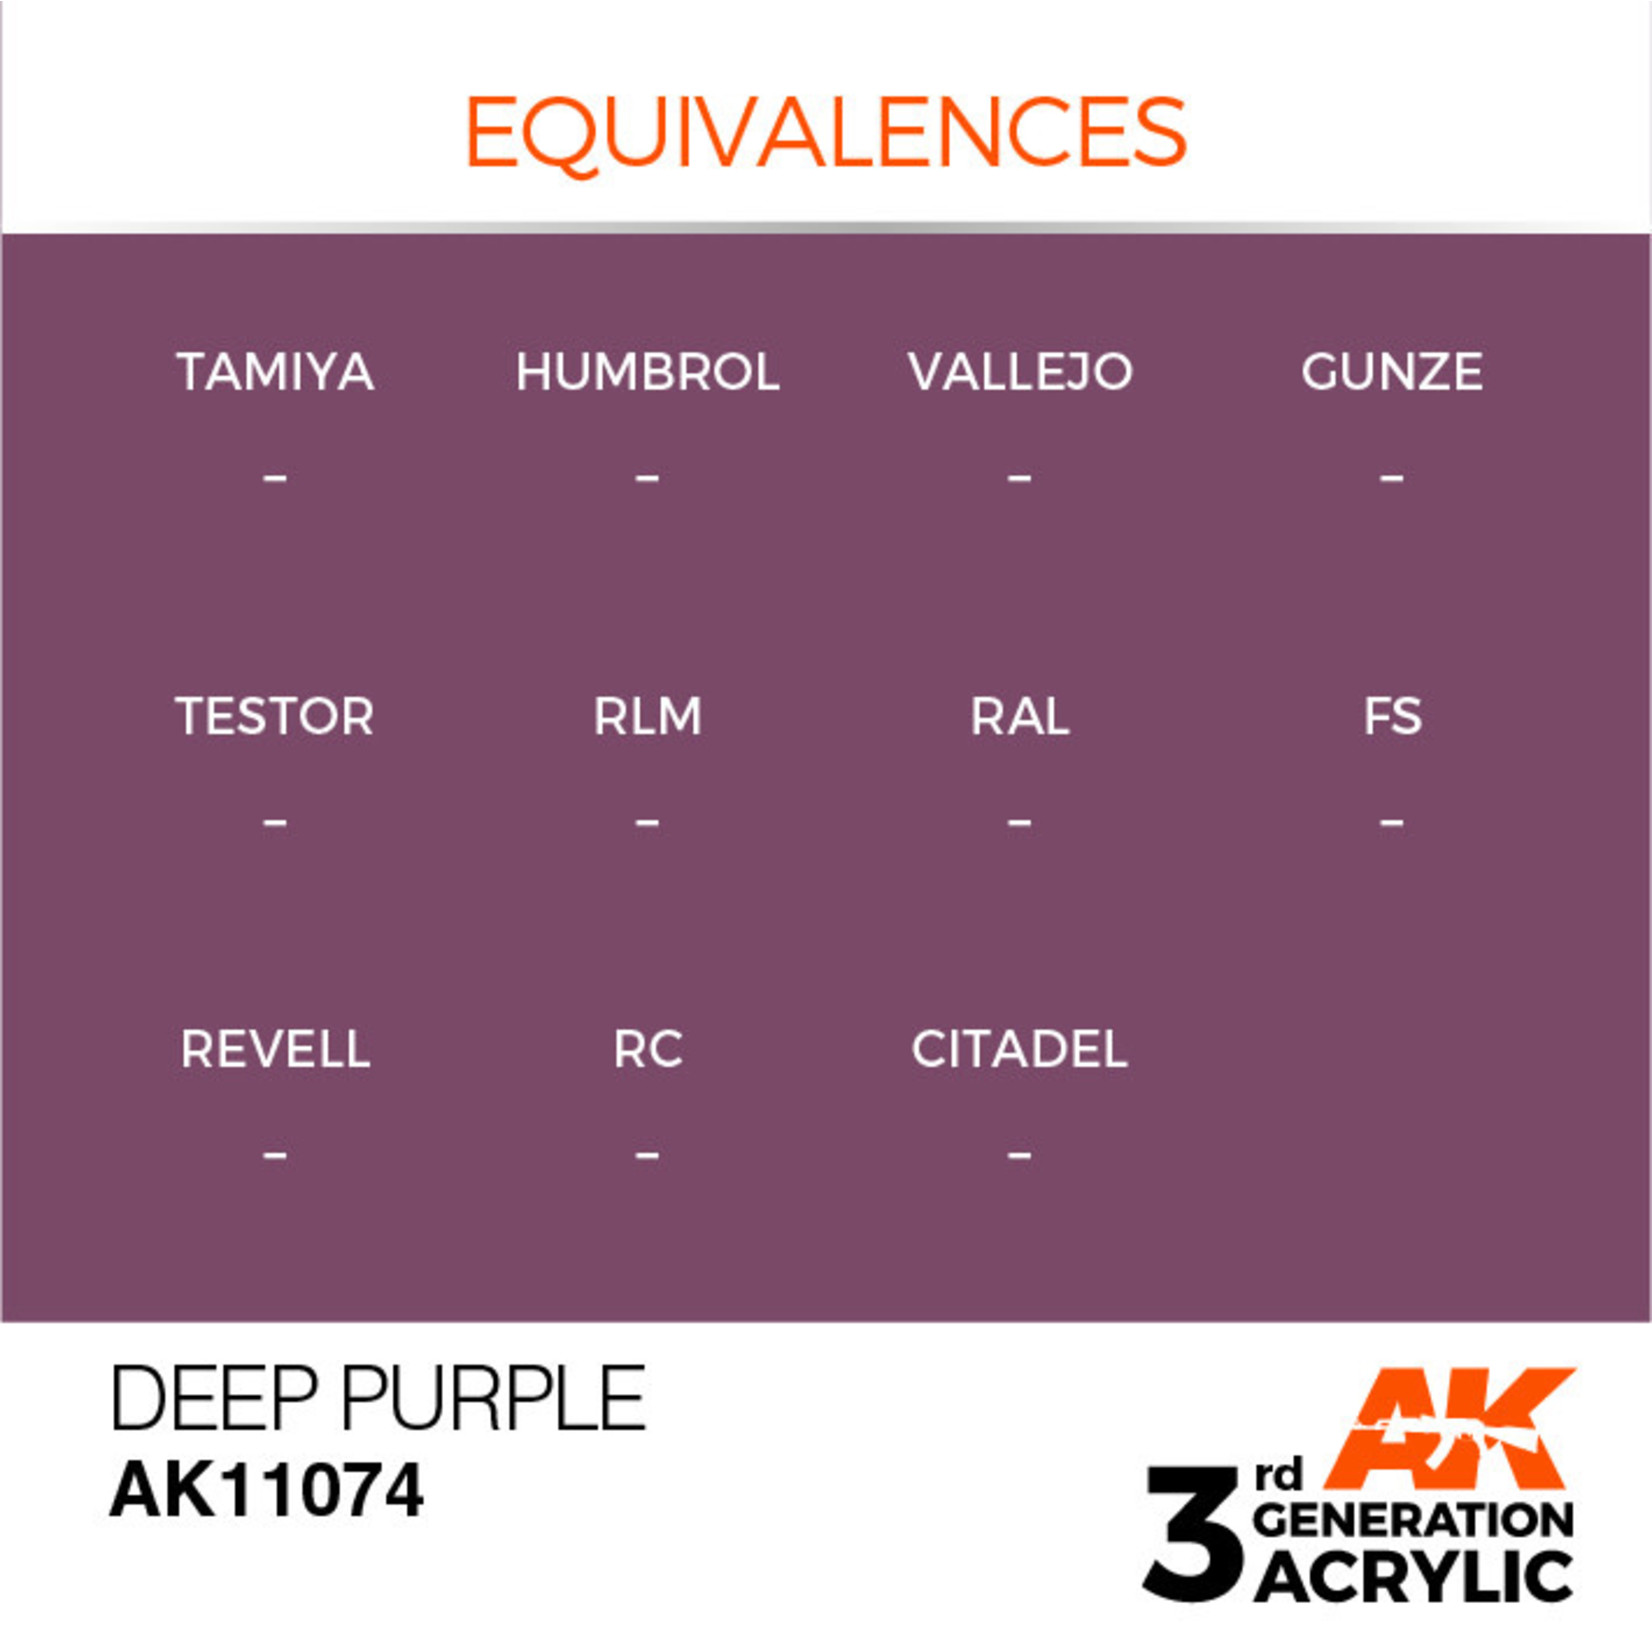 AK Interactive AK11074 3G Acrylic Deep Purple 17ml